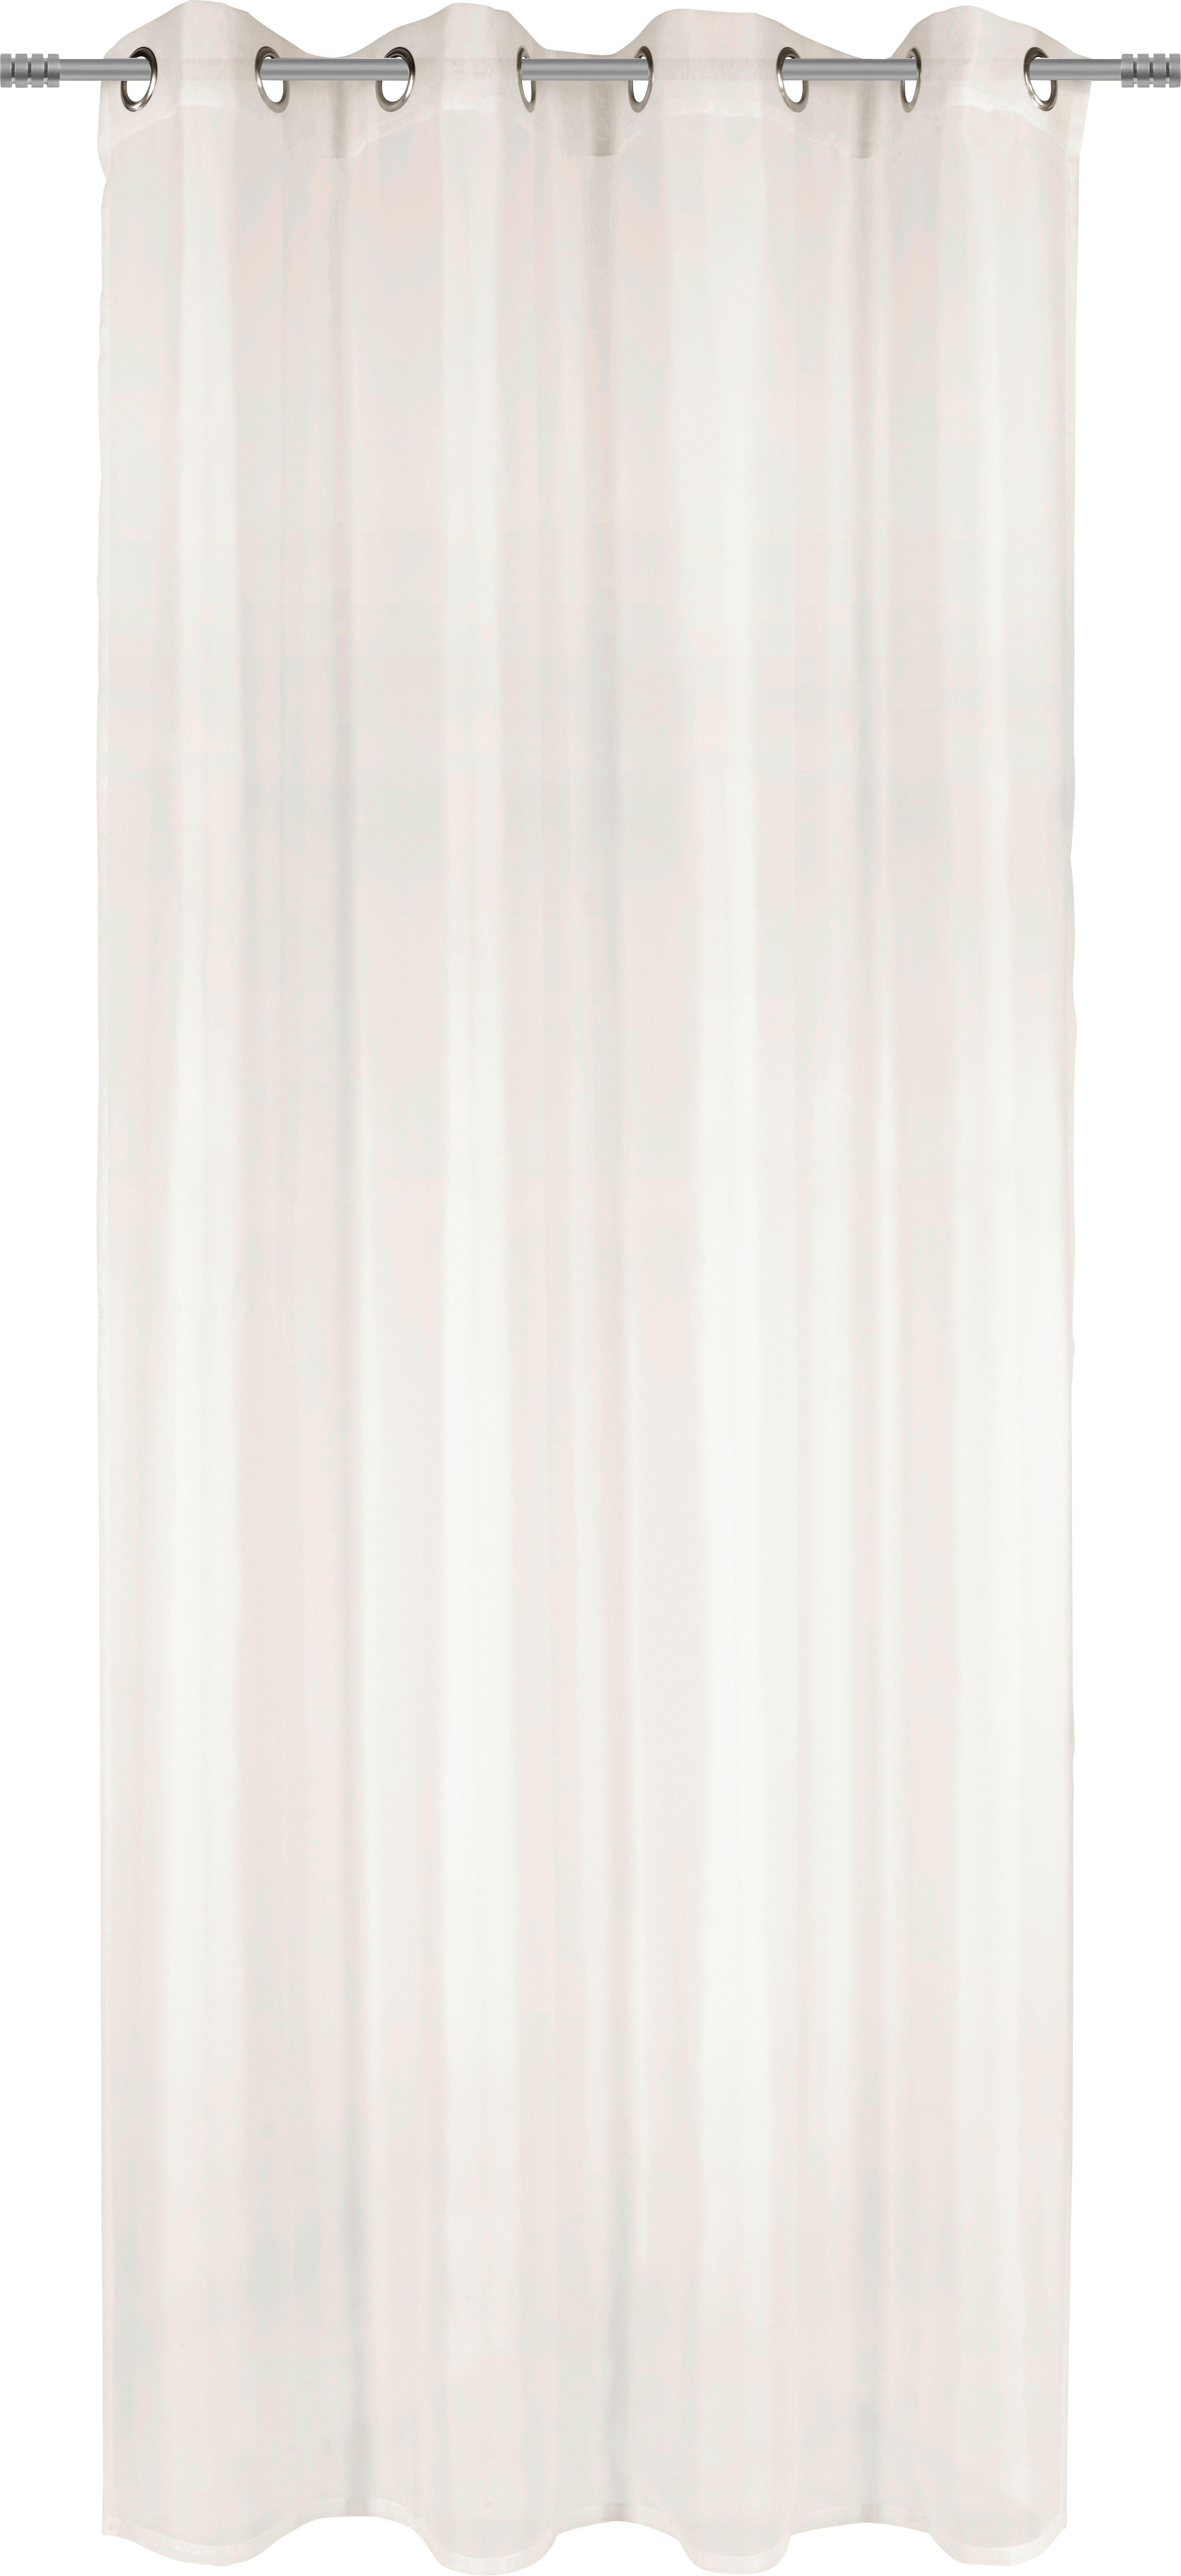 ÖLJETTLÄNGD transparent  - naturfärgad, Basics, textil (140/245cm) - Boxxx